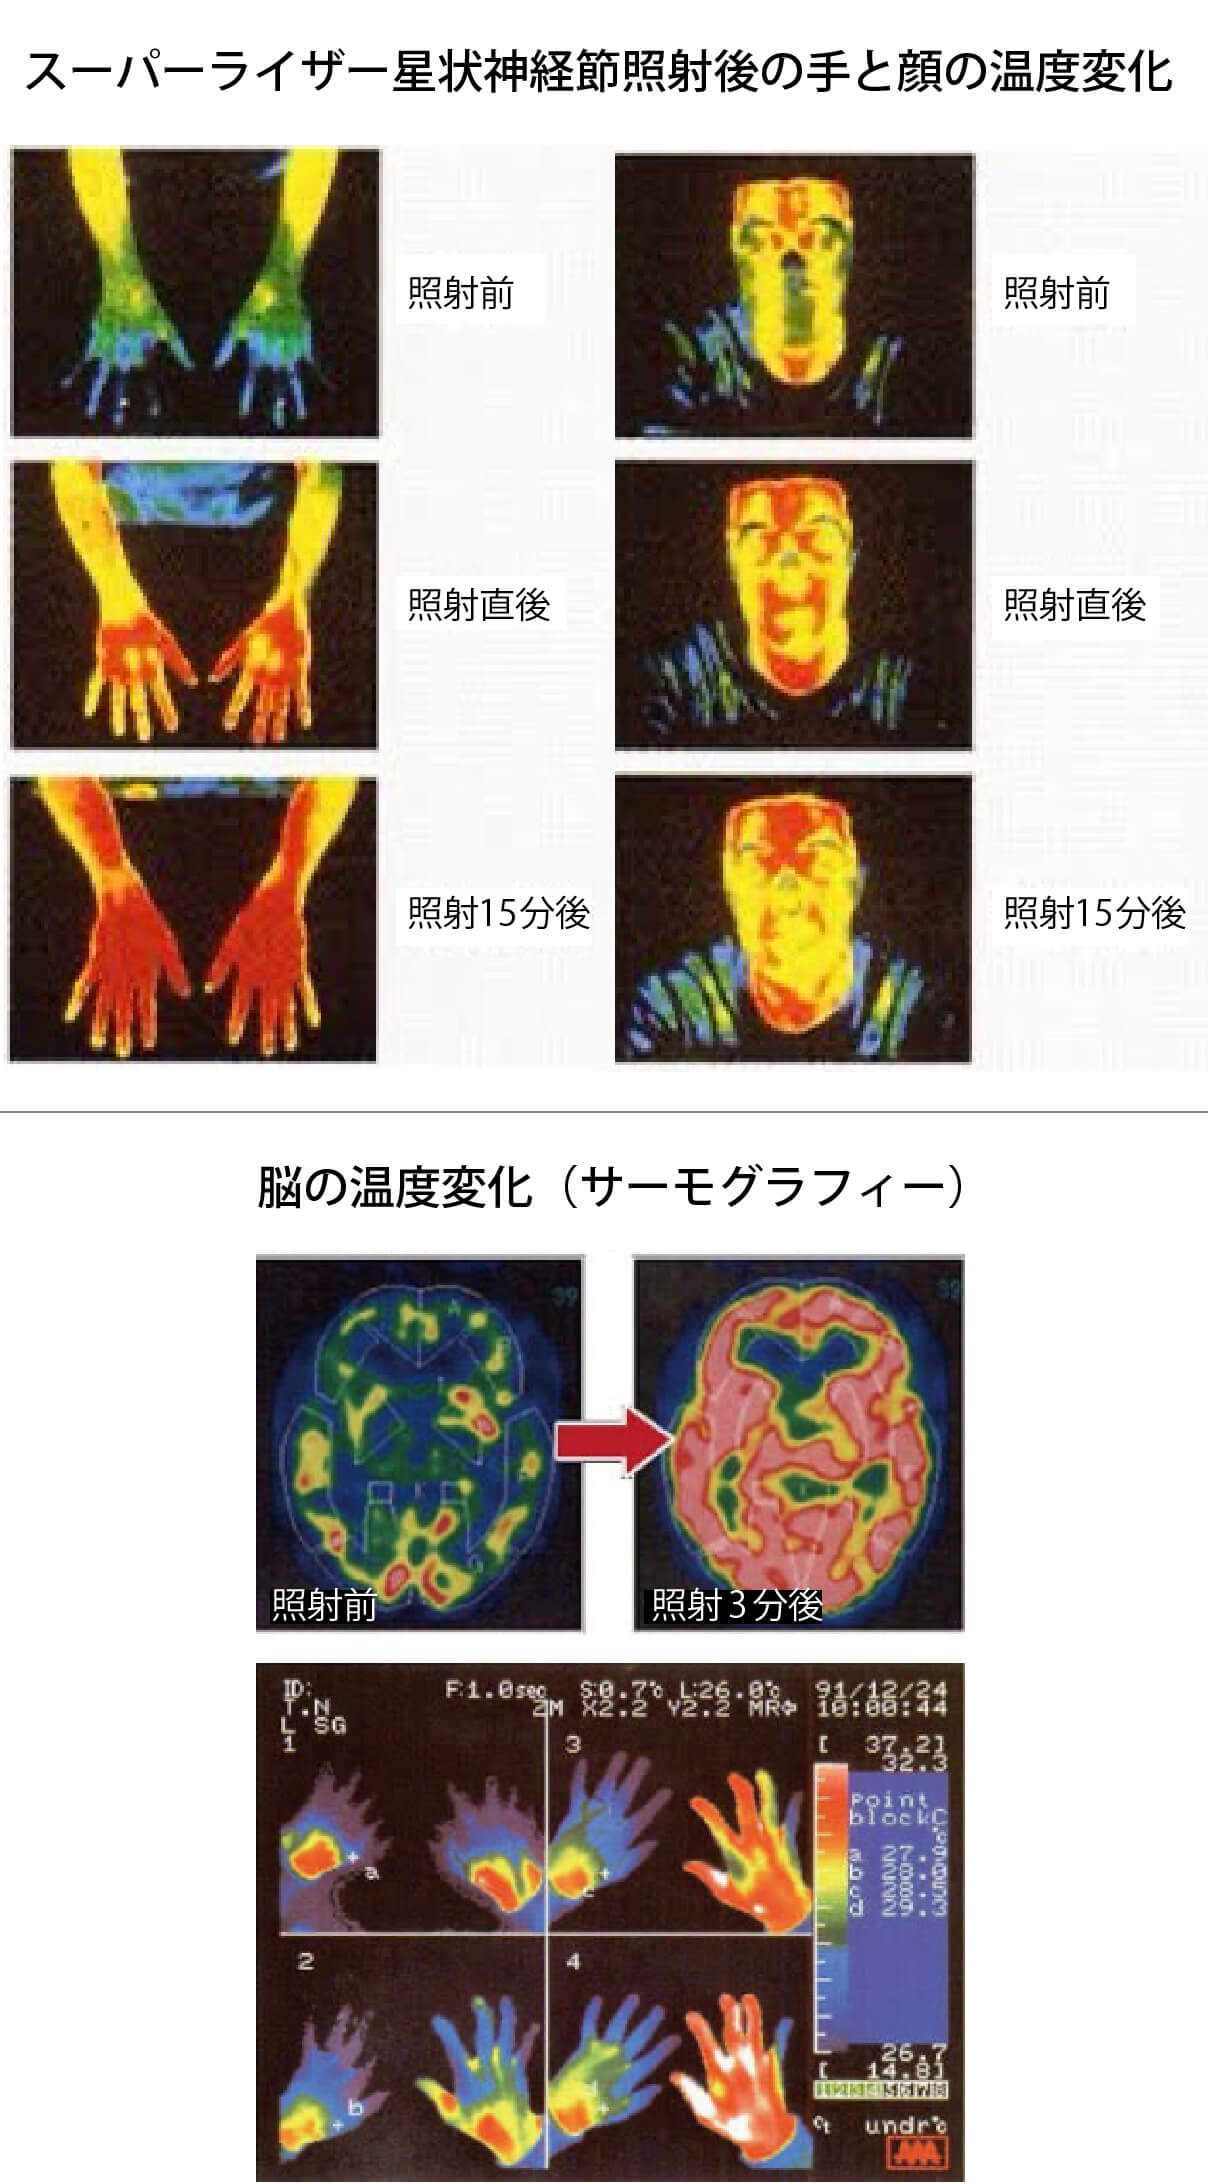 スーパーライザー星状神経節照射後の手と顔の温度変化